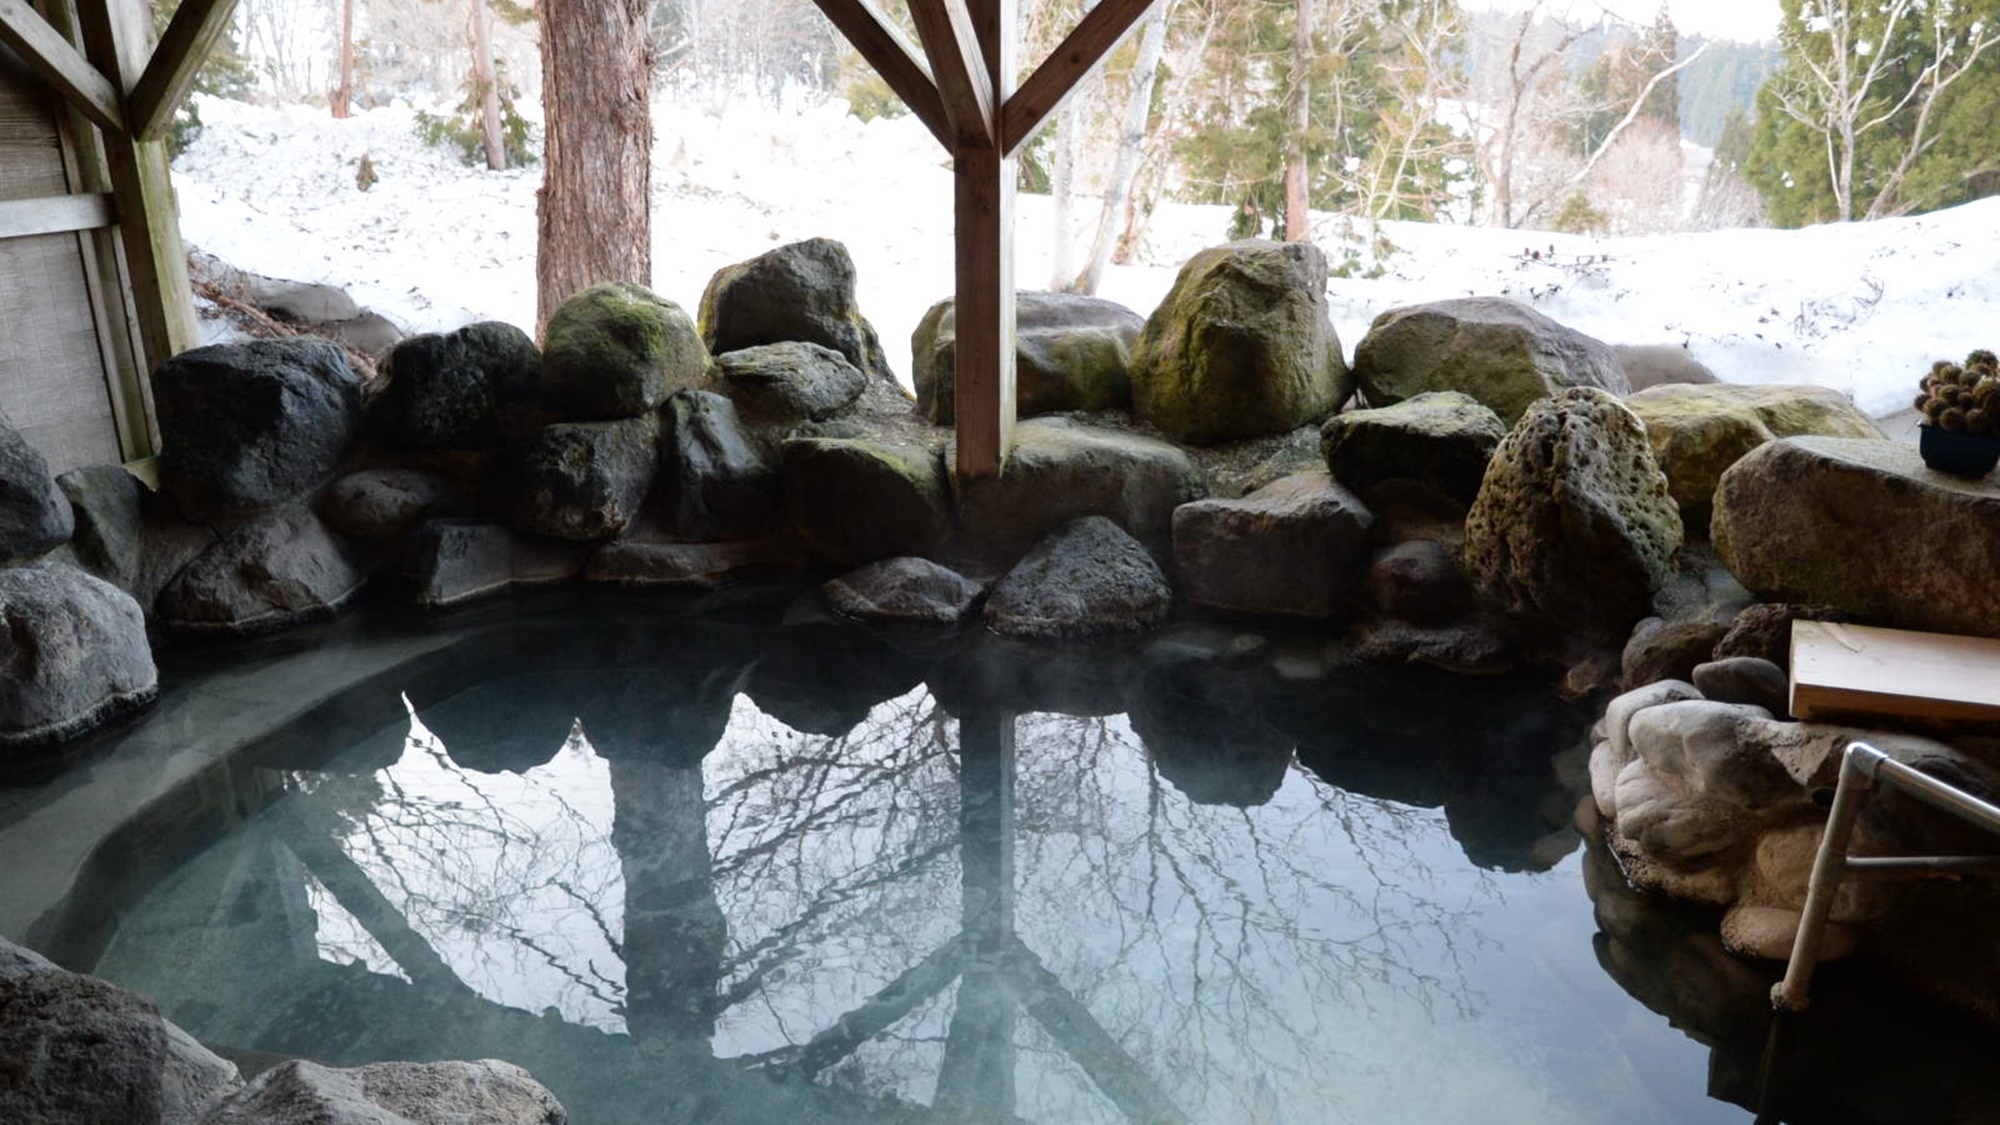 源泉掛け流しの露天風呂では、四季折々の色々な表情をお楽しみいただけます。